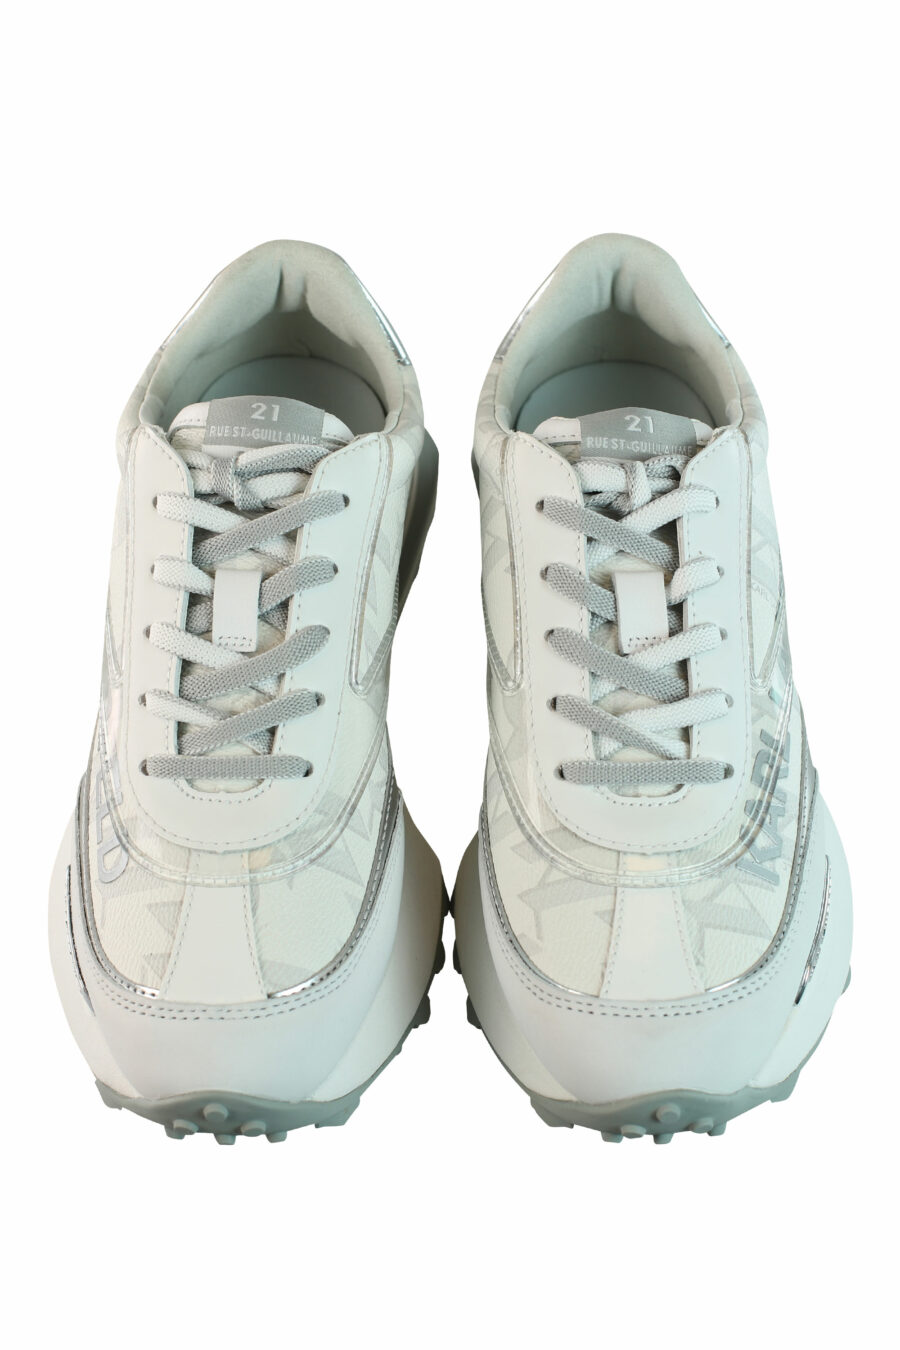 Zapatillas blancas "zone" con plateado y logo - IMG 0878